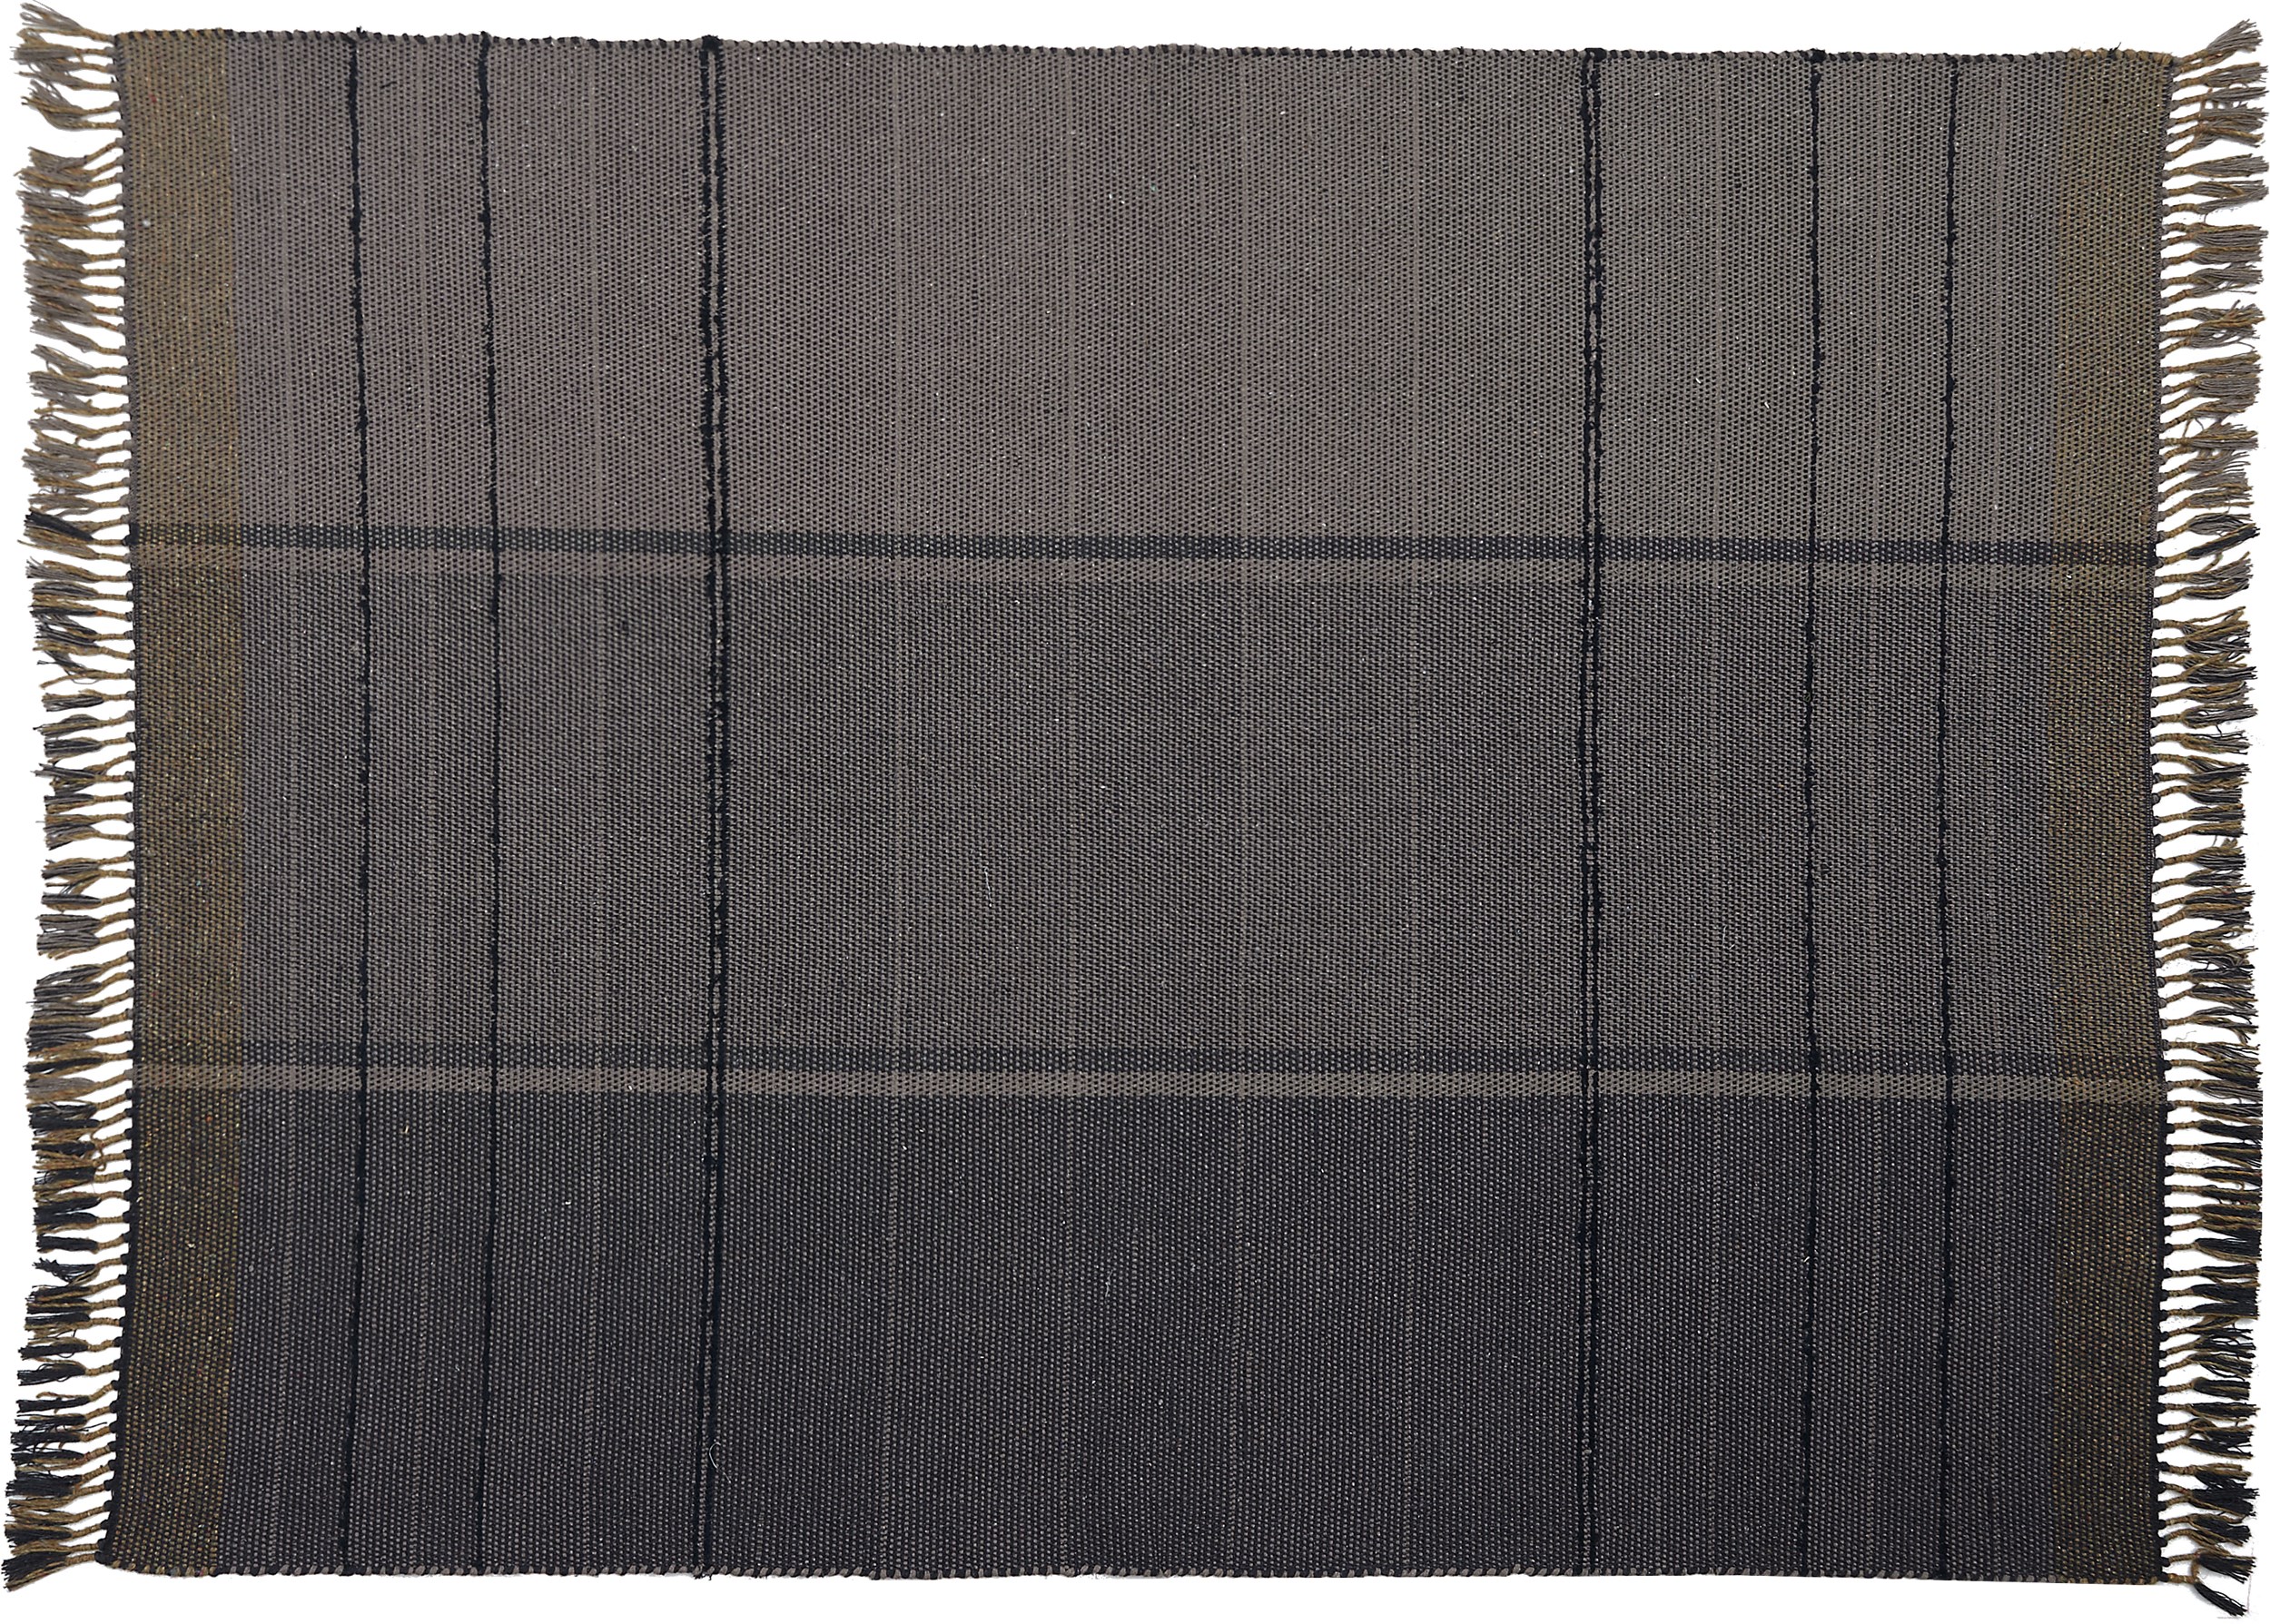 Bremdal Kelimmatta 160 x 230 cm - Taupefärgad ull/bomull och med ränder